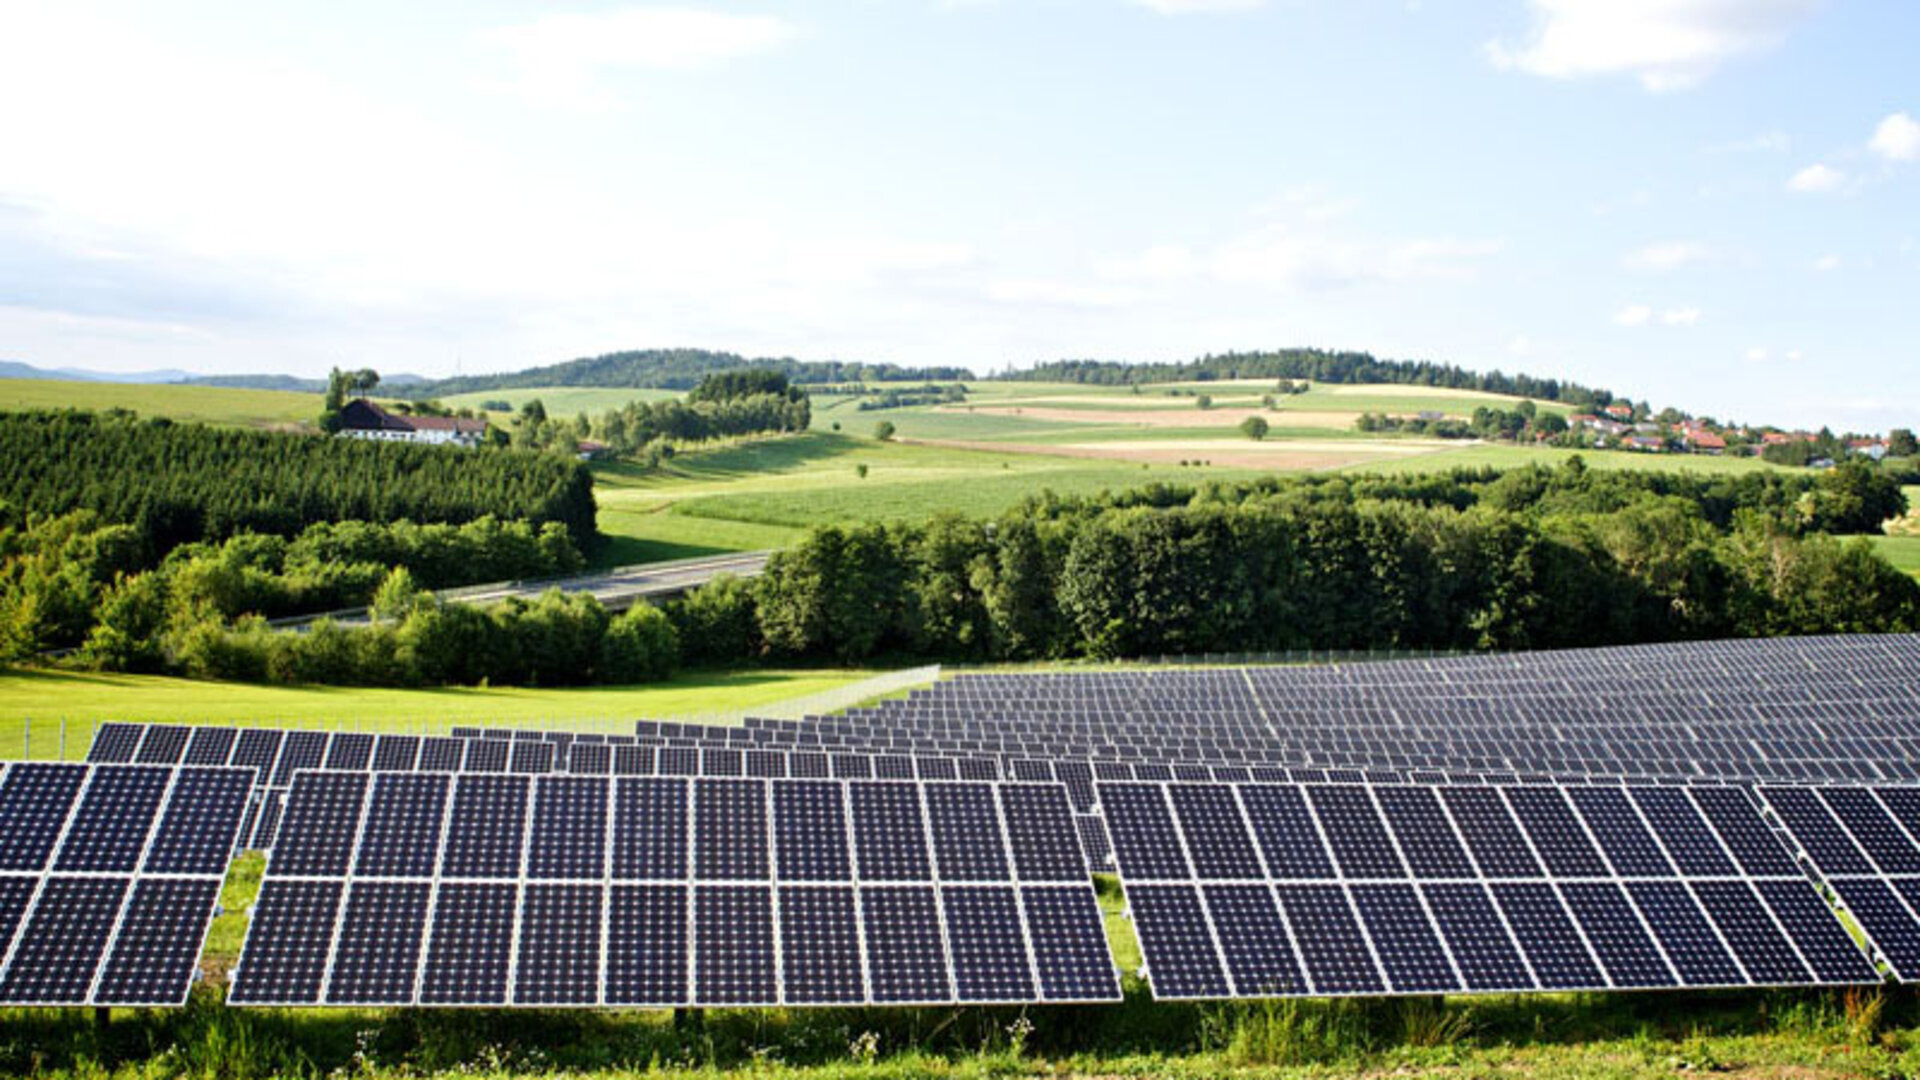 Fotografía de una planta solar fotovoltaica en un paisaje agrario mixto deCentroeuropa